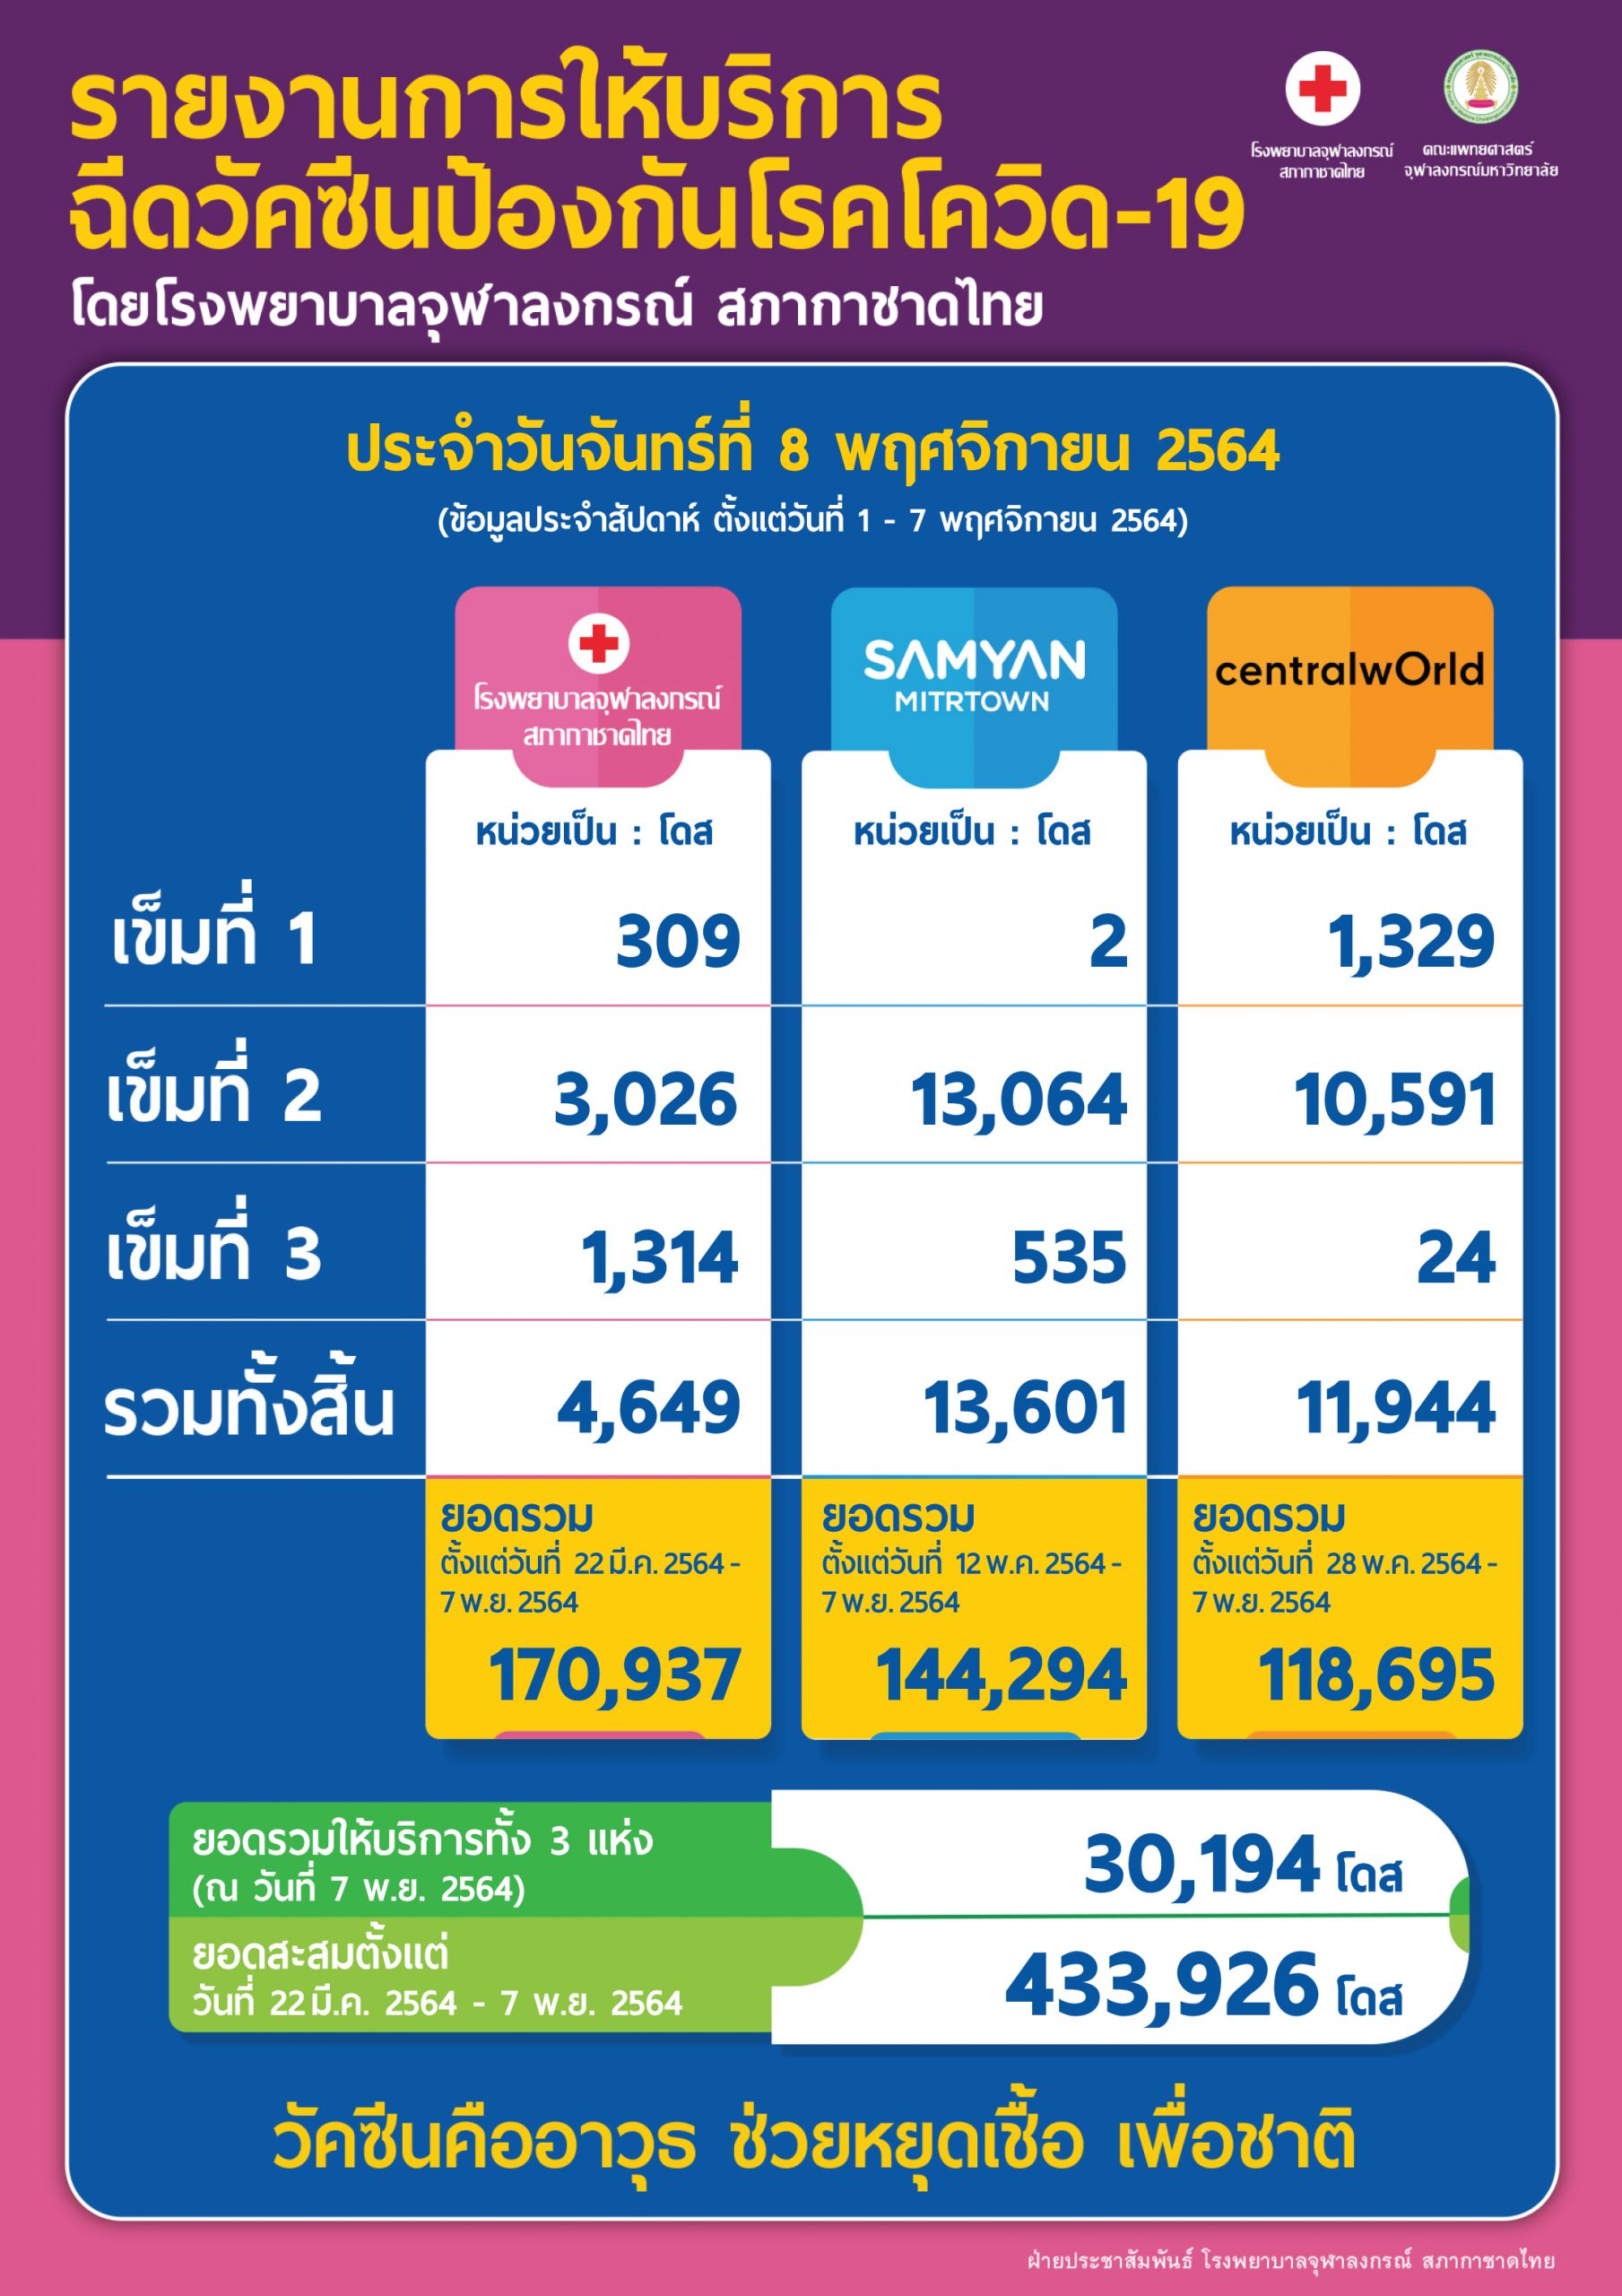 รายงานการให้บริการฉีดวัคซีนป้องกันโรคโควิด-19 โดยโรงพยาบาลจุฬาลงกรณ์ สภากาชาดไทย ประจำวันจันทร์ที่ 8 พฤศจิกายน 2564